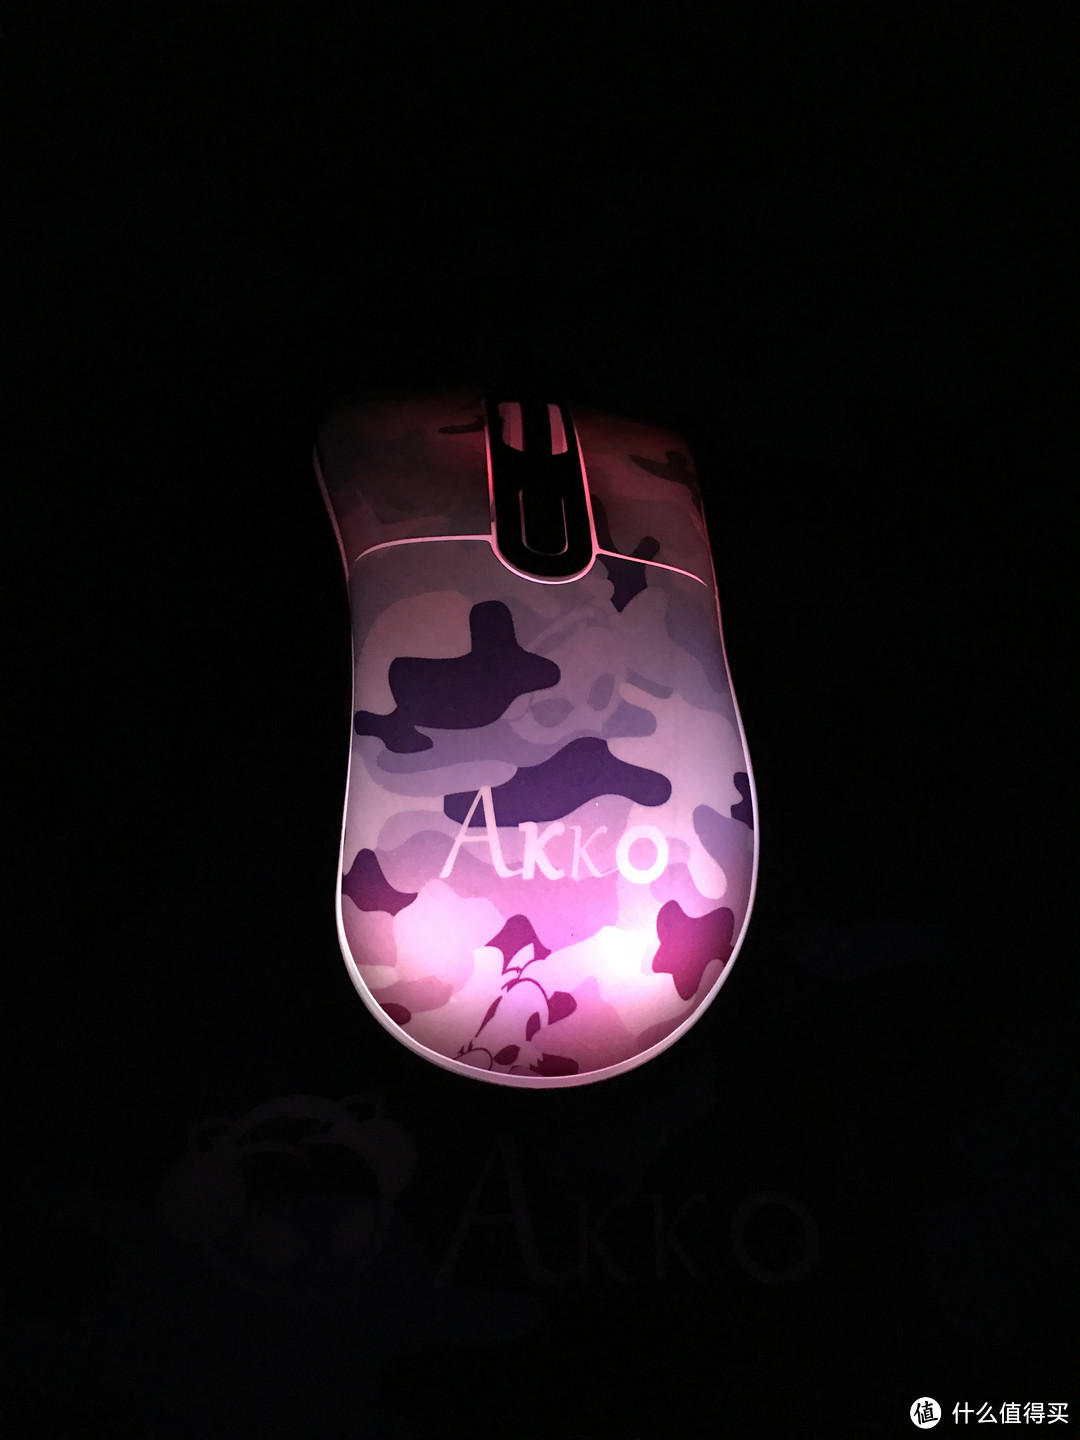 复古+创新——Akko 复古猫RGB 渐变迷彩（亮面）游戏鼠标+迷彩树脂鼠标垫开箱